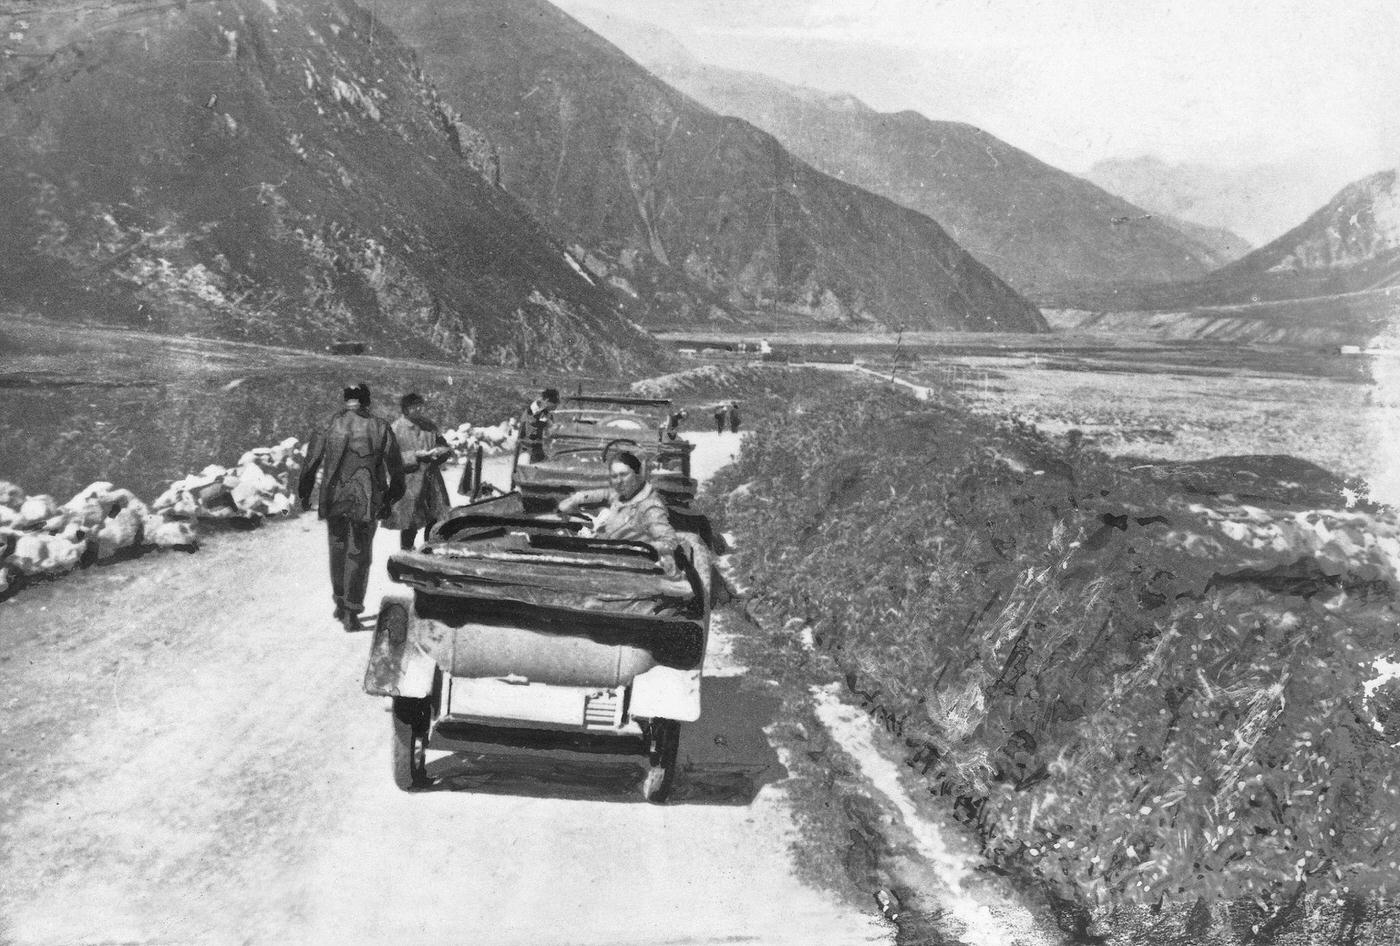 Clärenore Stinnes Driving Through the Caucasus in Russia, 1925